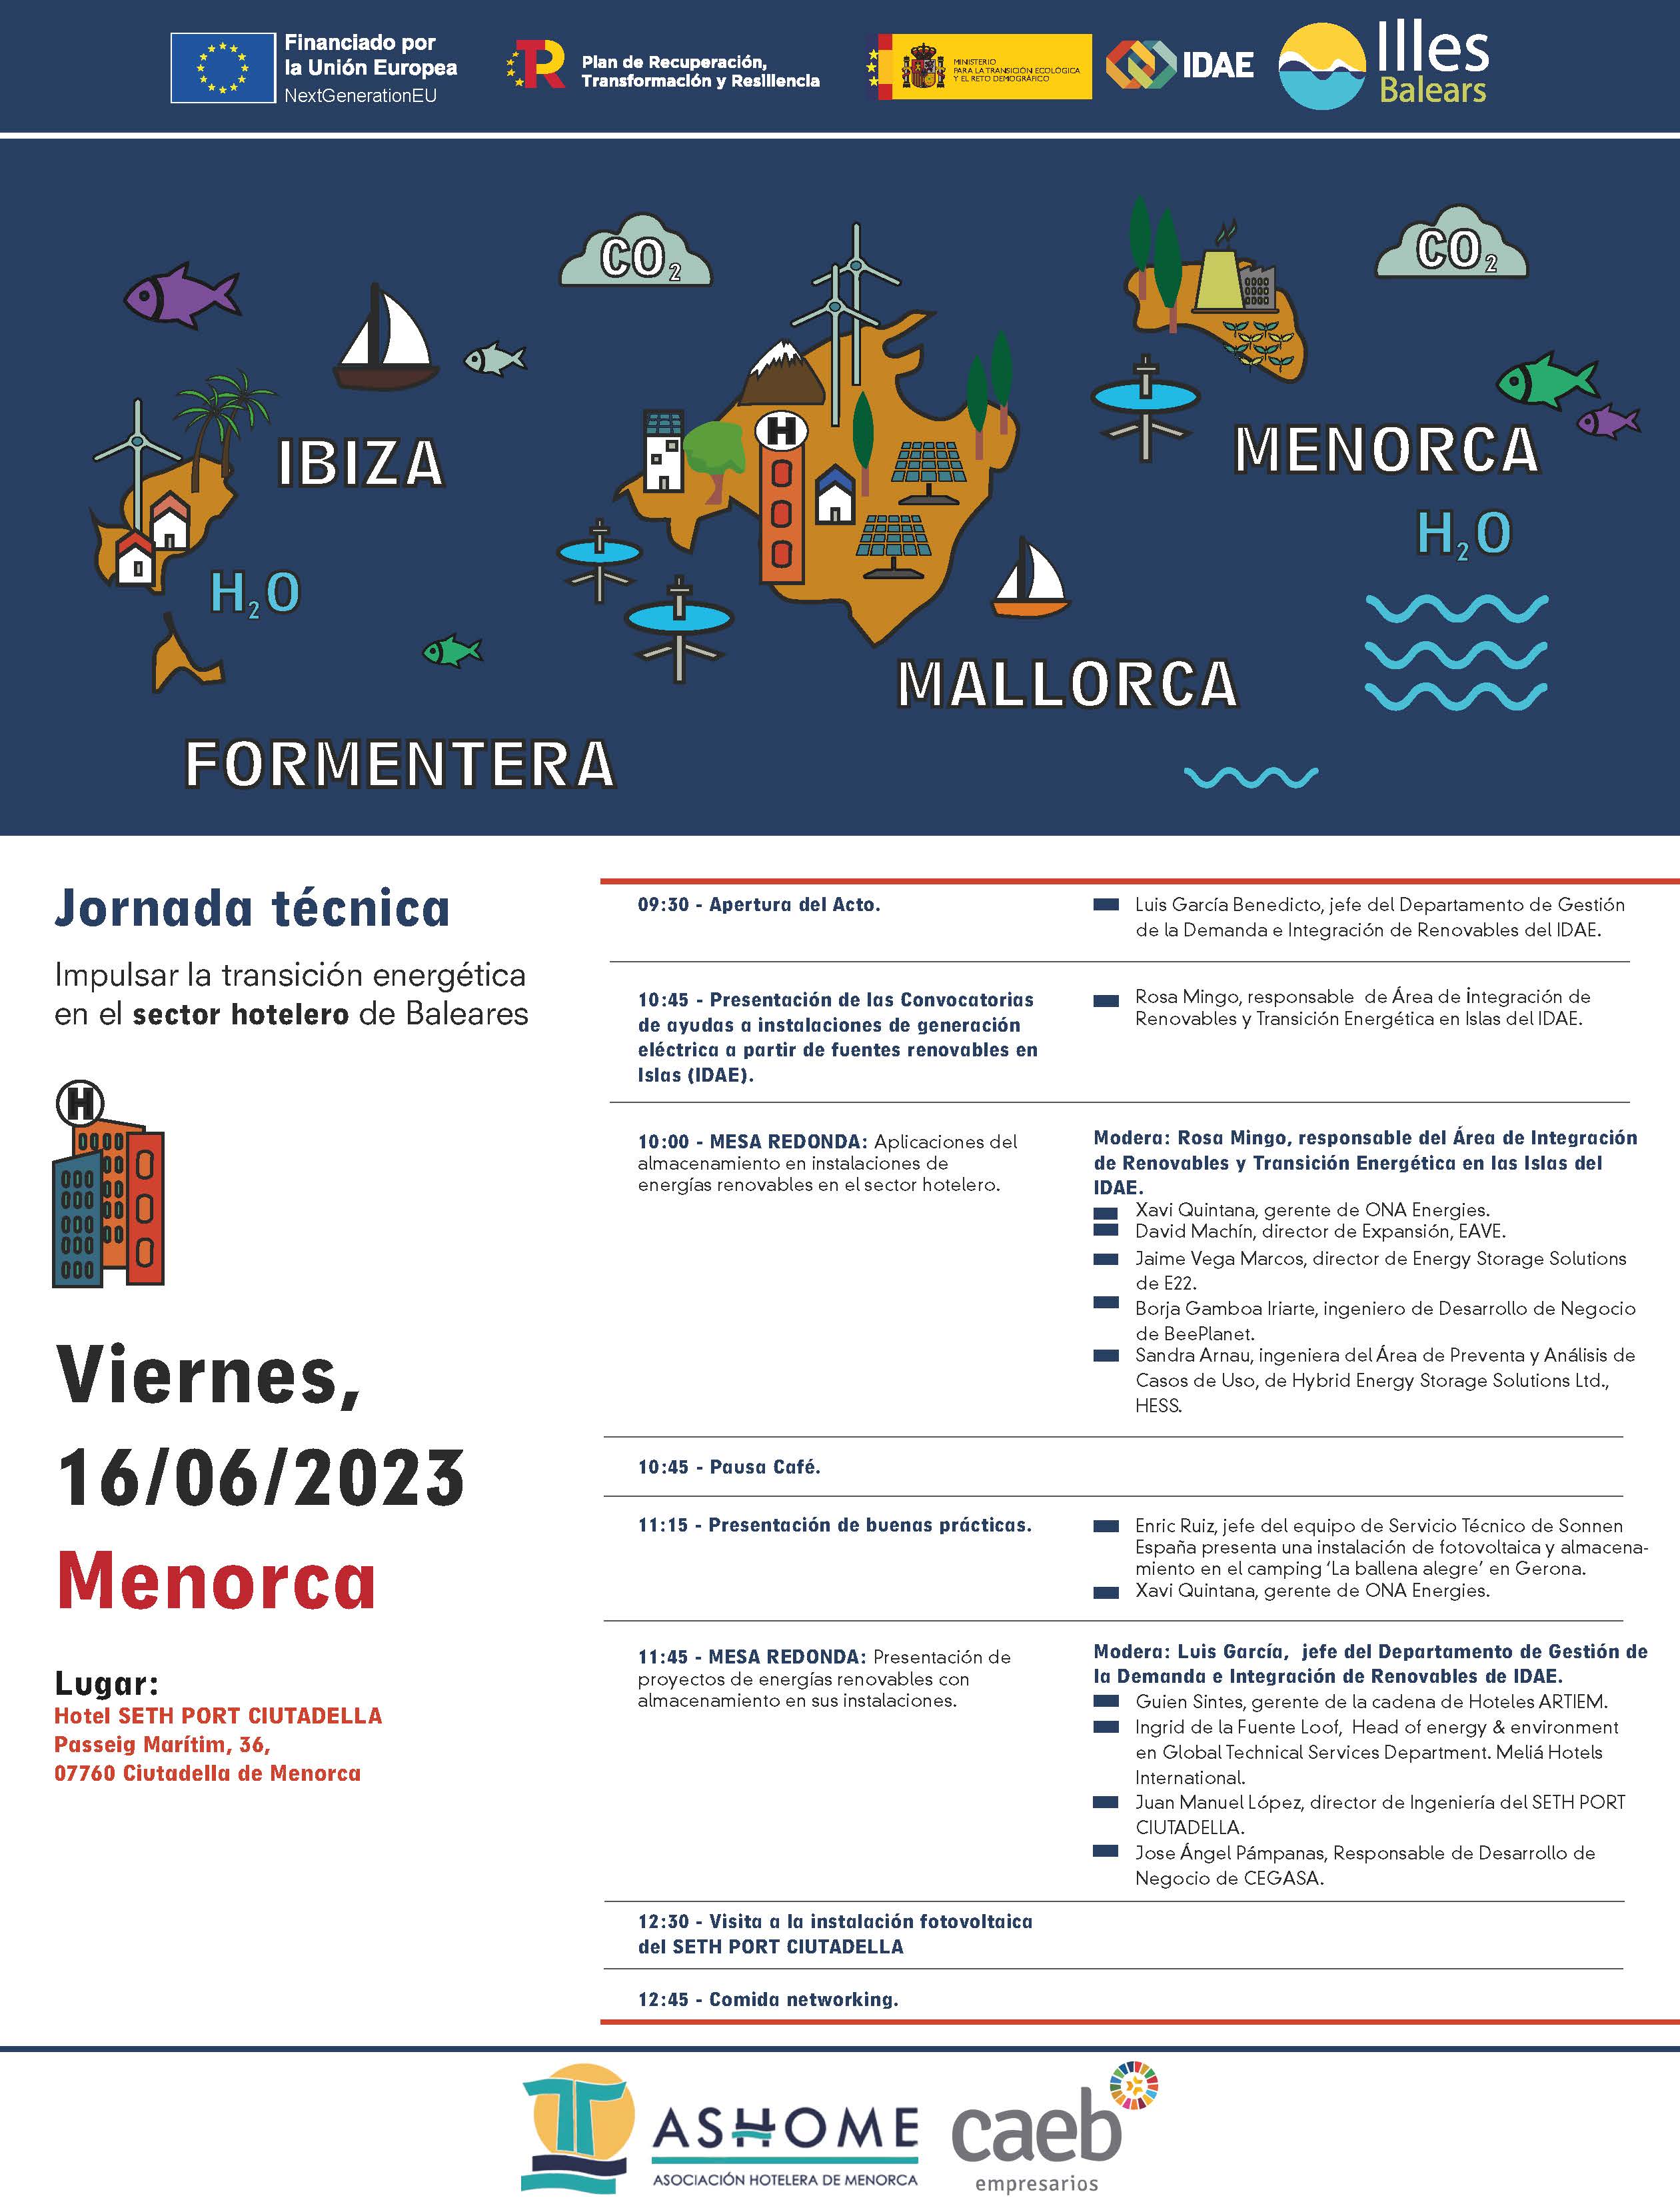 Jornada técnica "Impulsar la transición energética en el sector hotelero de Baleares"